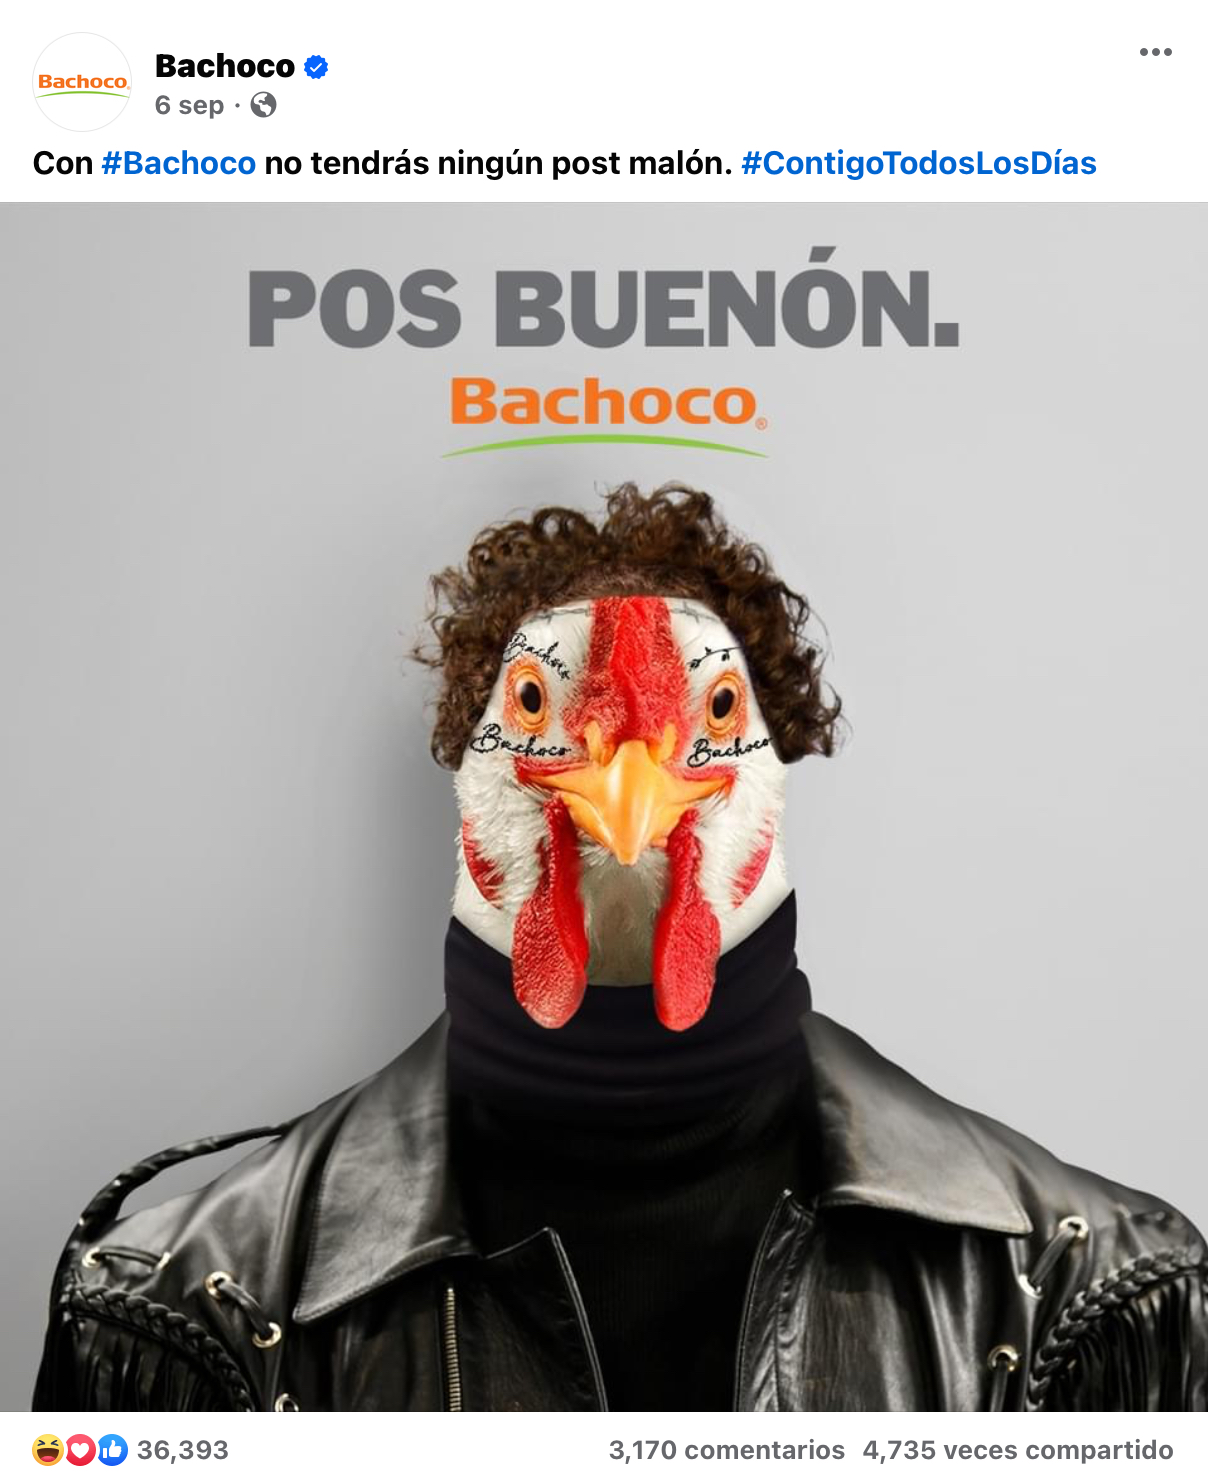 Anuncio para publicidad en redes sociales de Bachoco haciendo referencia al artista Post Malon en forma de gallo con el texto POS BUENÓN.